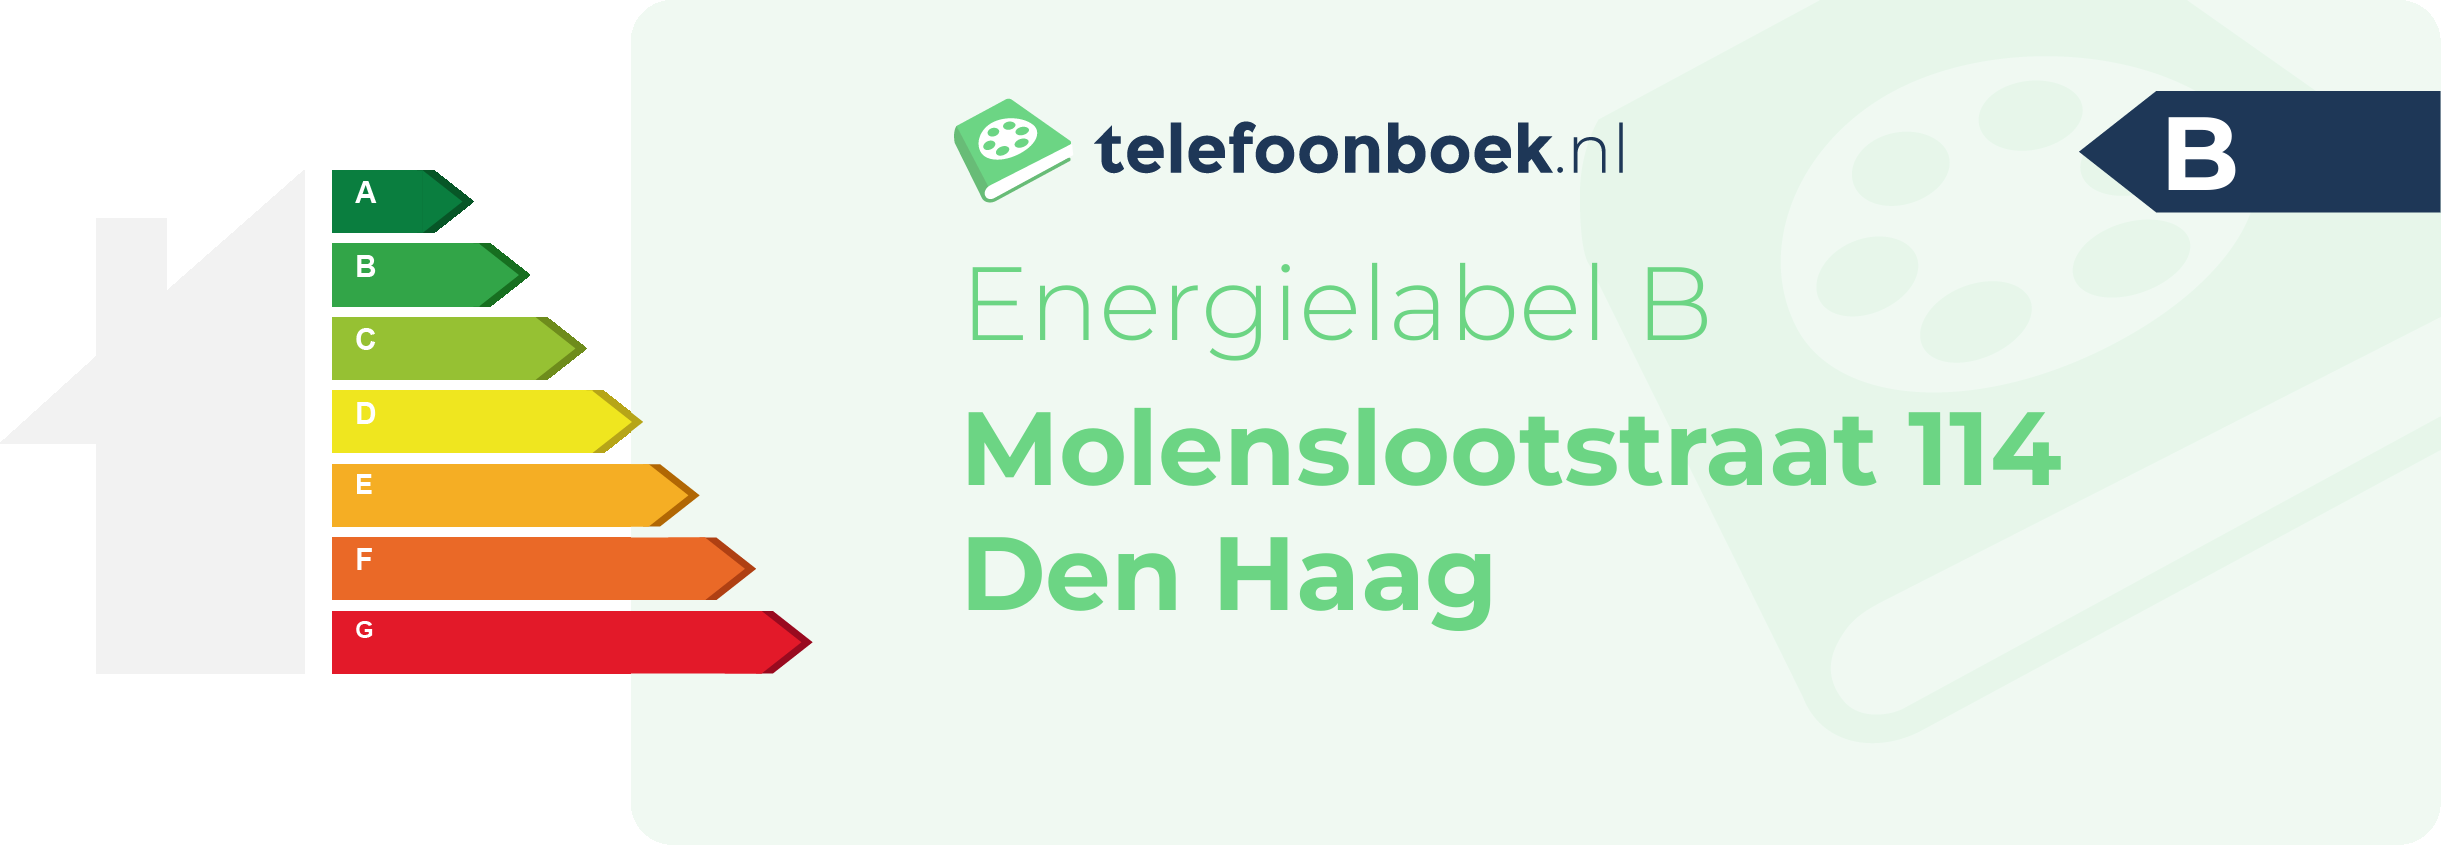 Energielabel Molenslootstraat 114 Den Haag